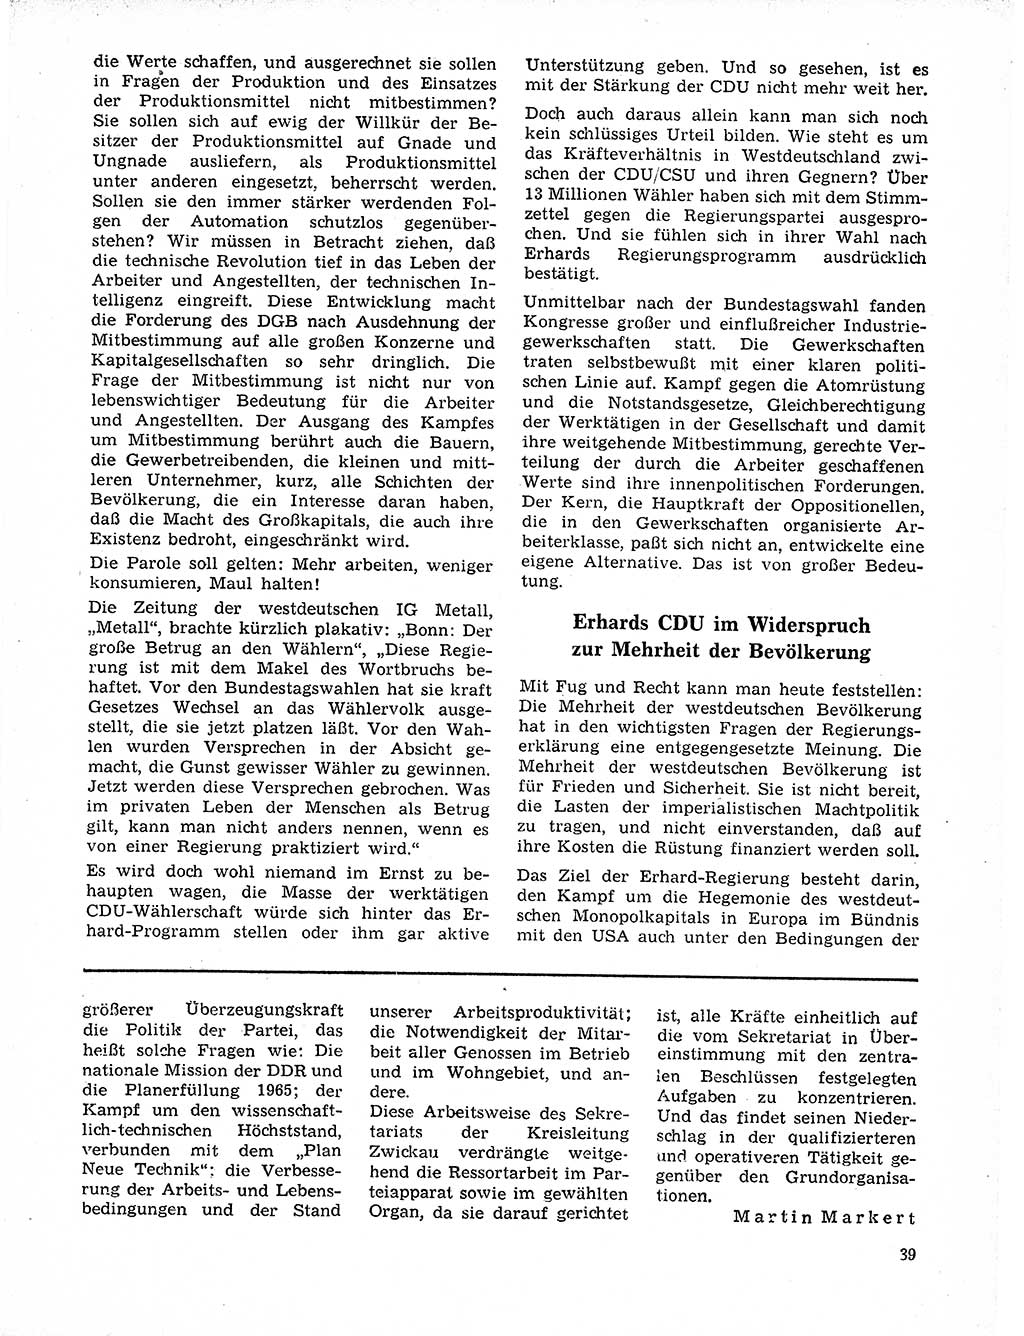 Neuer Weg (NW), Organ des Zentralkomitees (ZK) der SED (Sozialistische Einheitspartei Deutschlands) für Fragen des Parteilebens, 21. Jahrgang [Deutsche Demokratische Republik (DDR)] 1966, Seite 39 (NW ZK SED DDR 1966, S. 39)